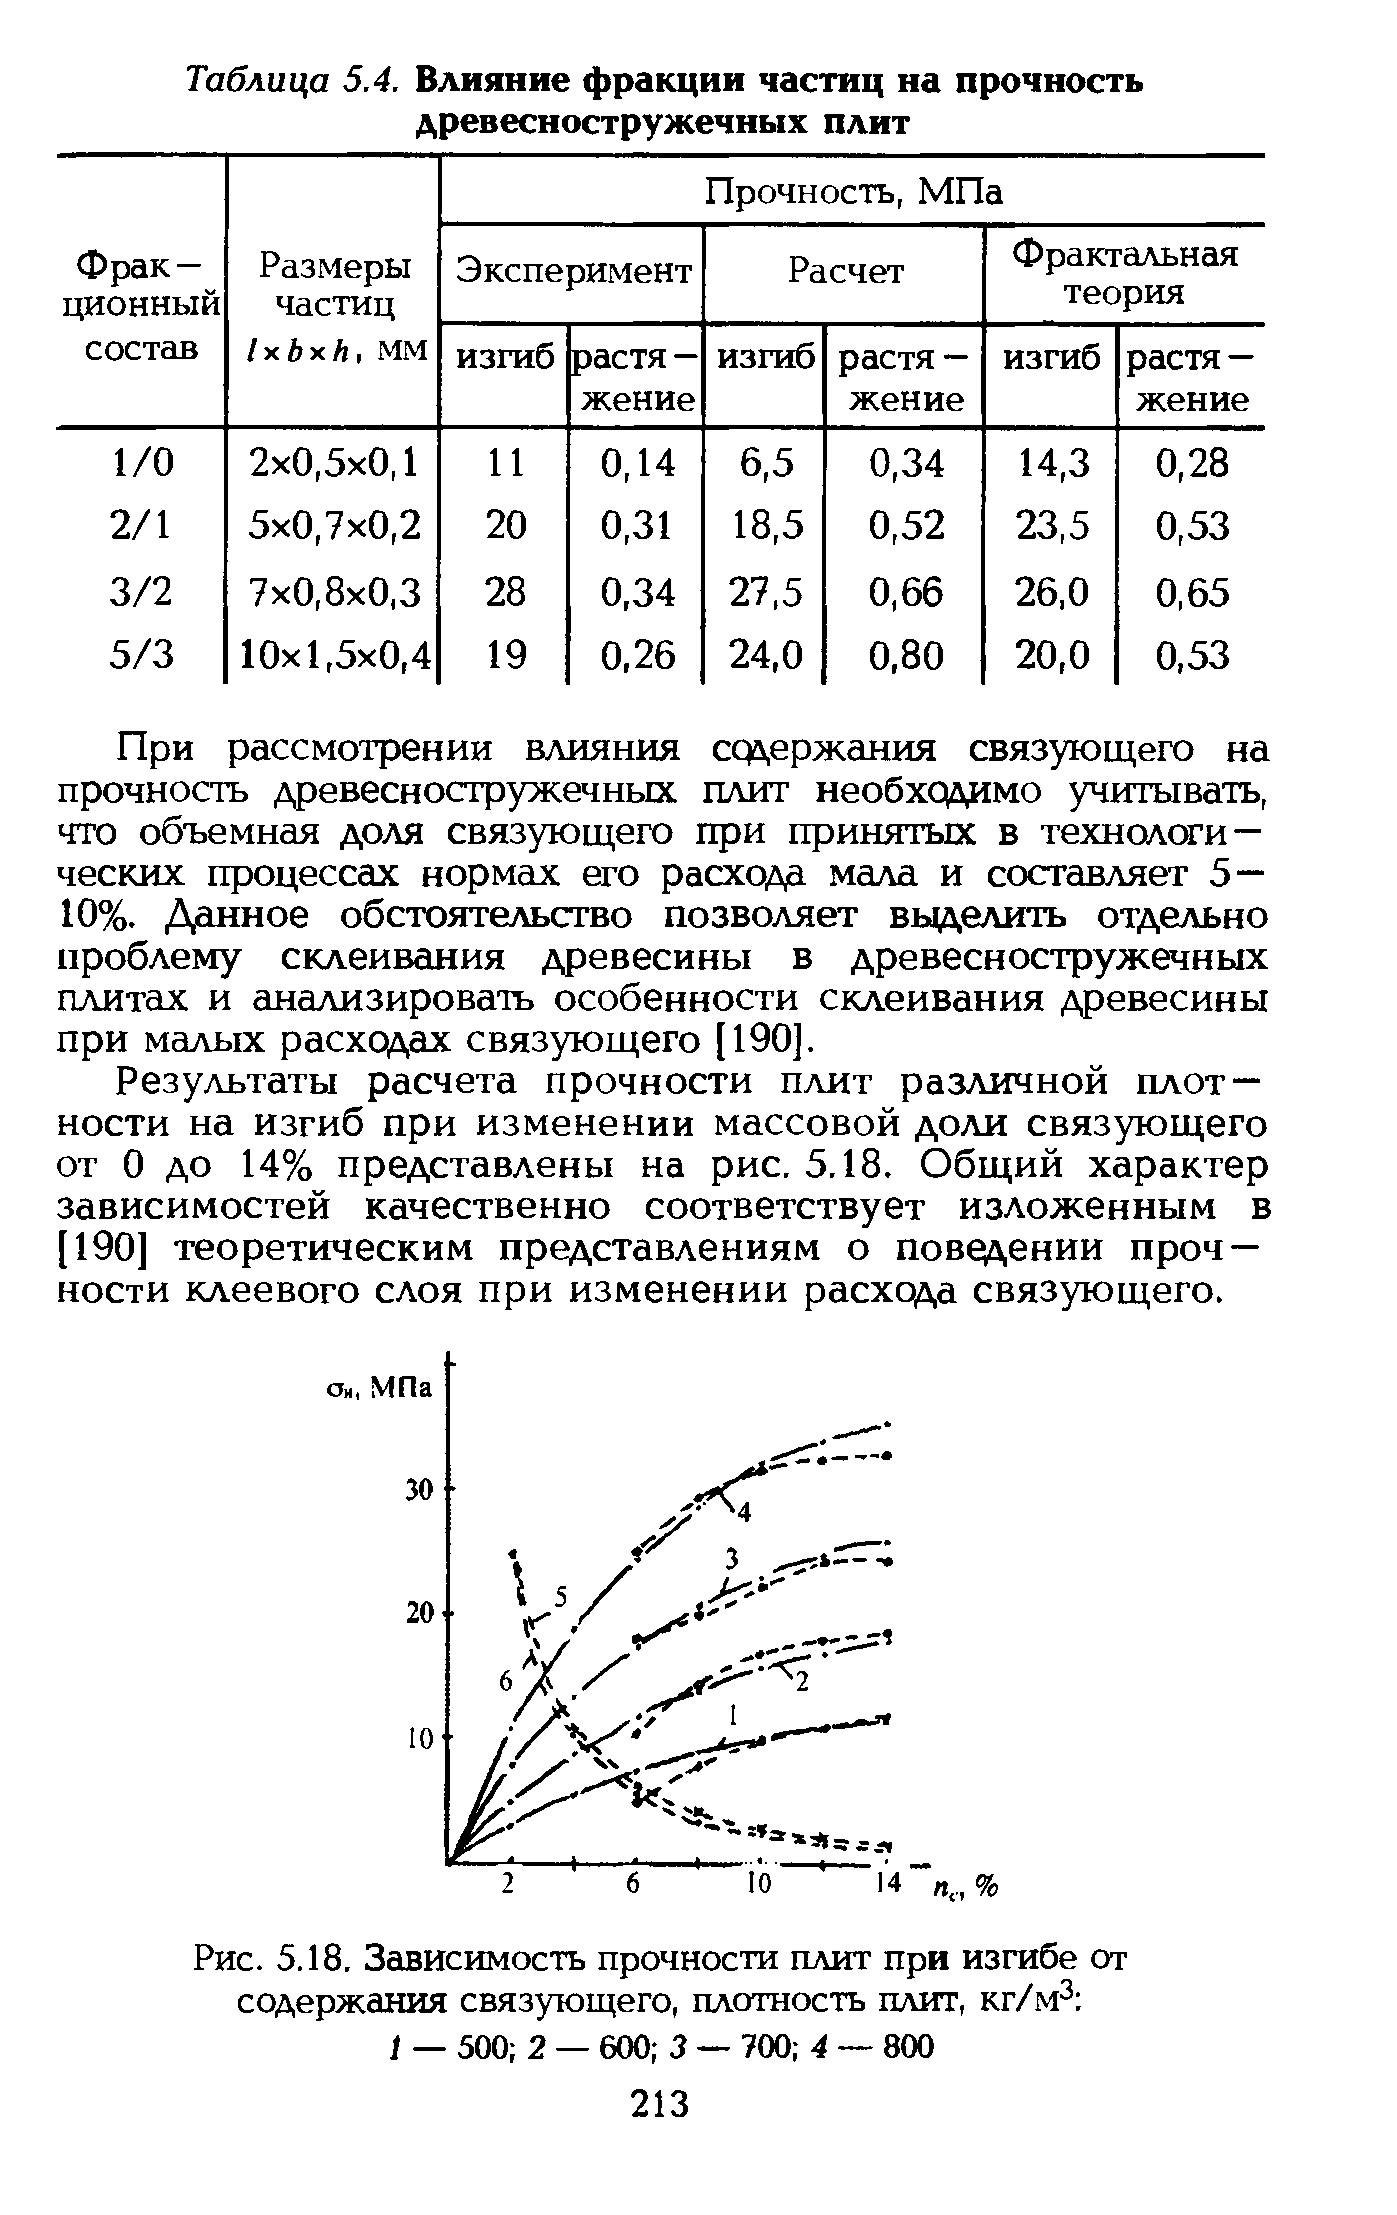 Таблица 5.4. Влияние фракции частиц на прочность древесностружечных плит
